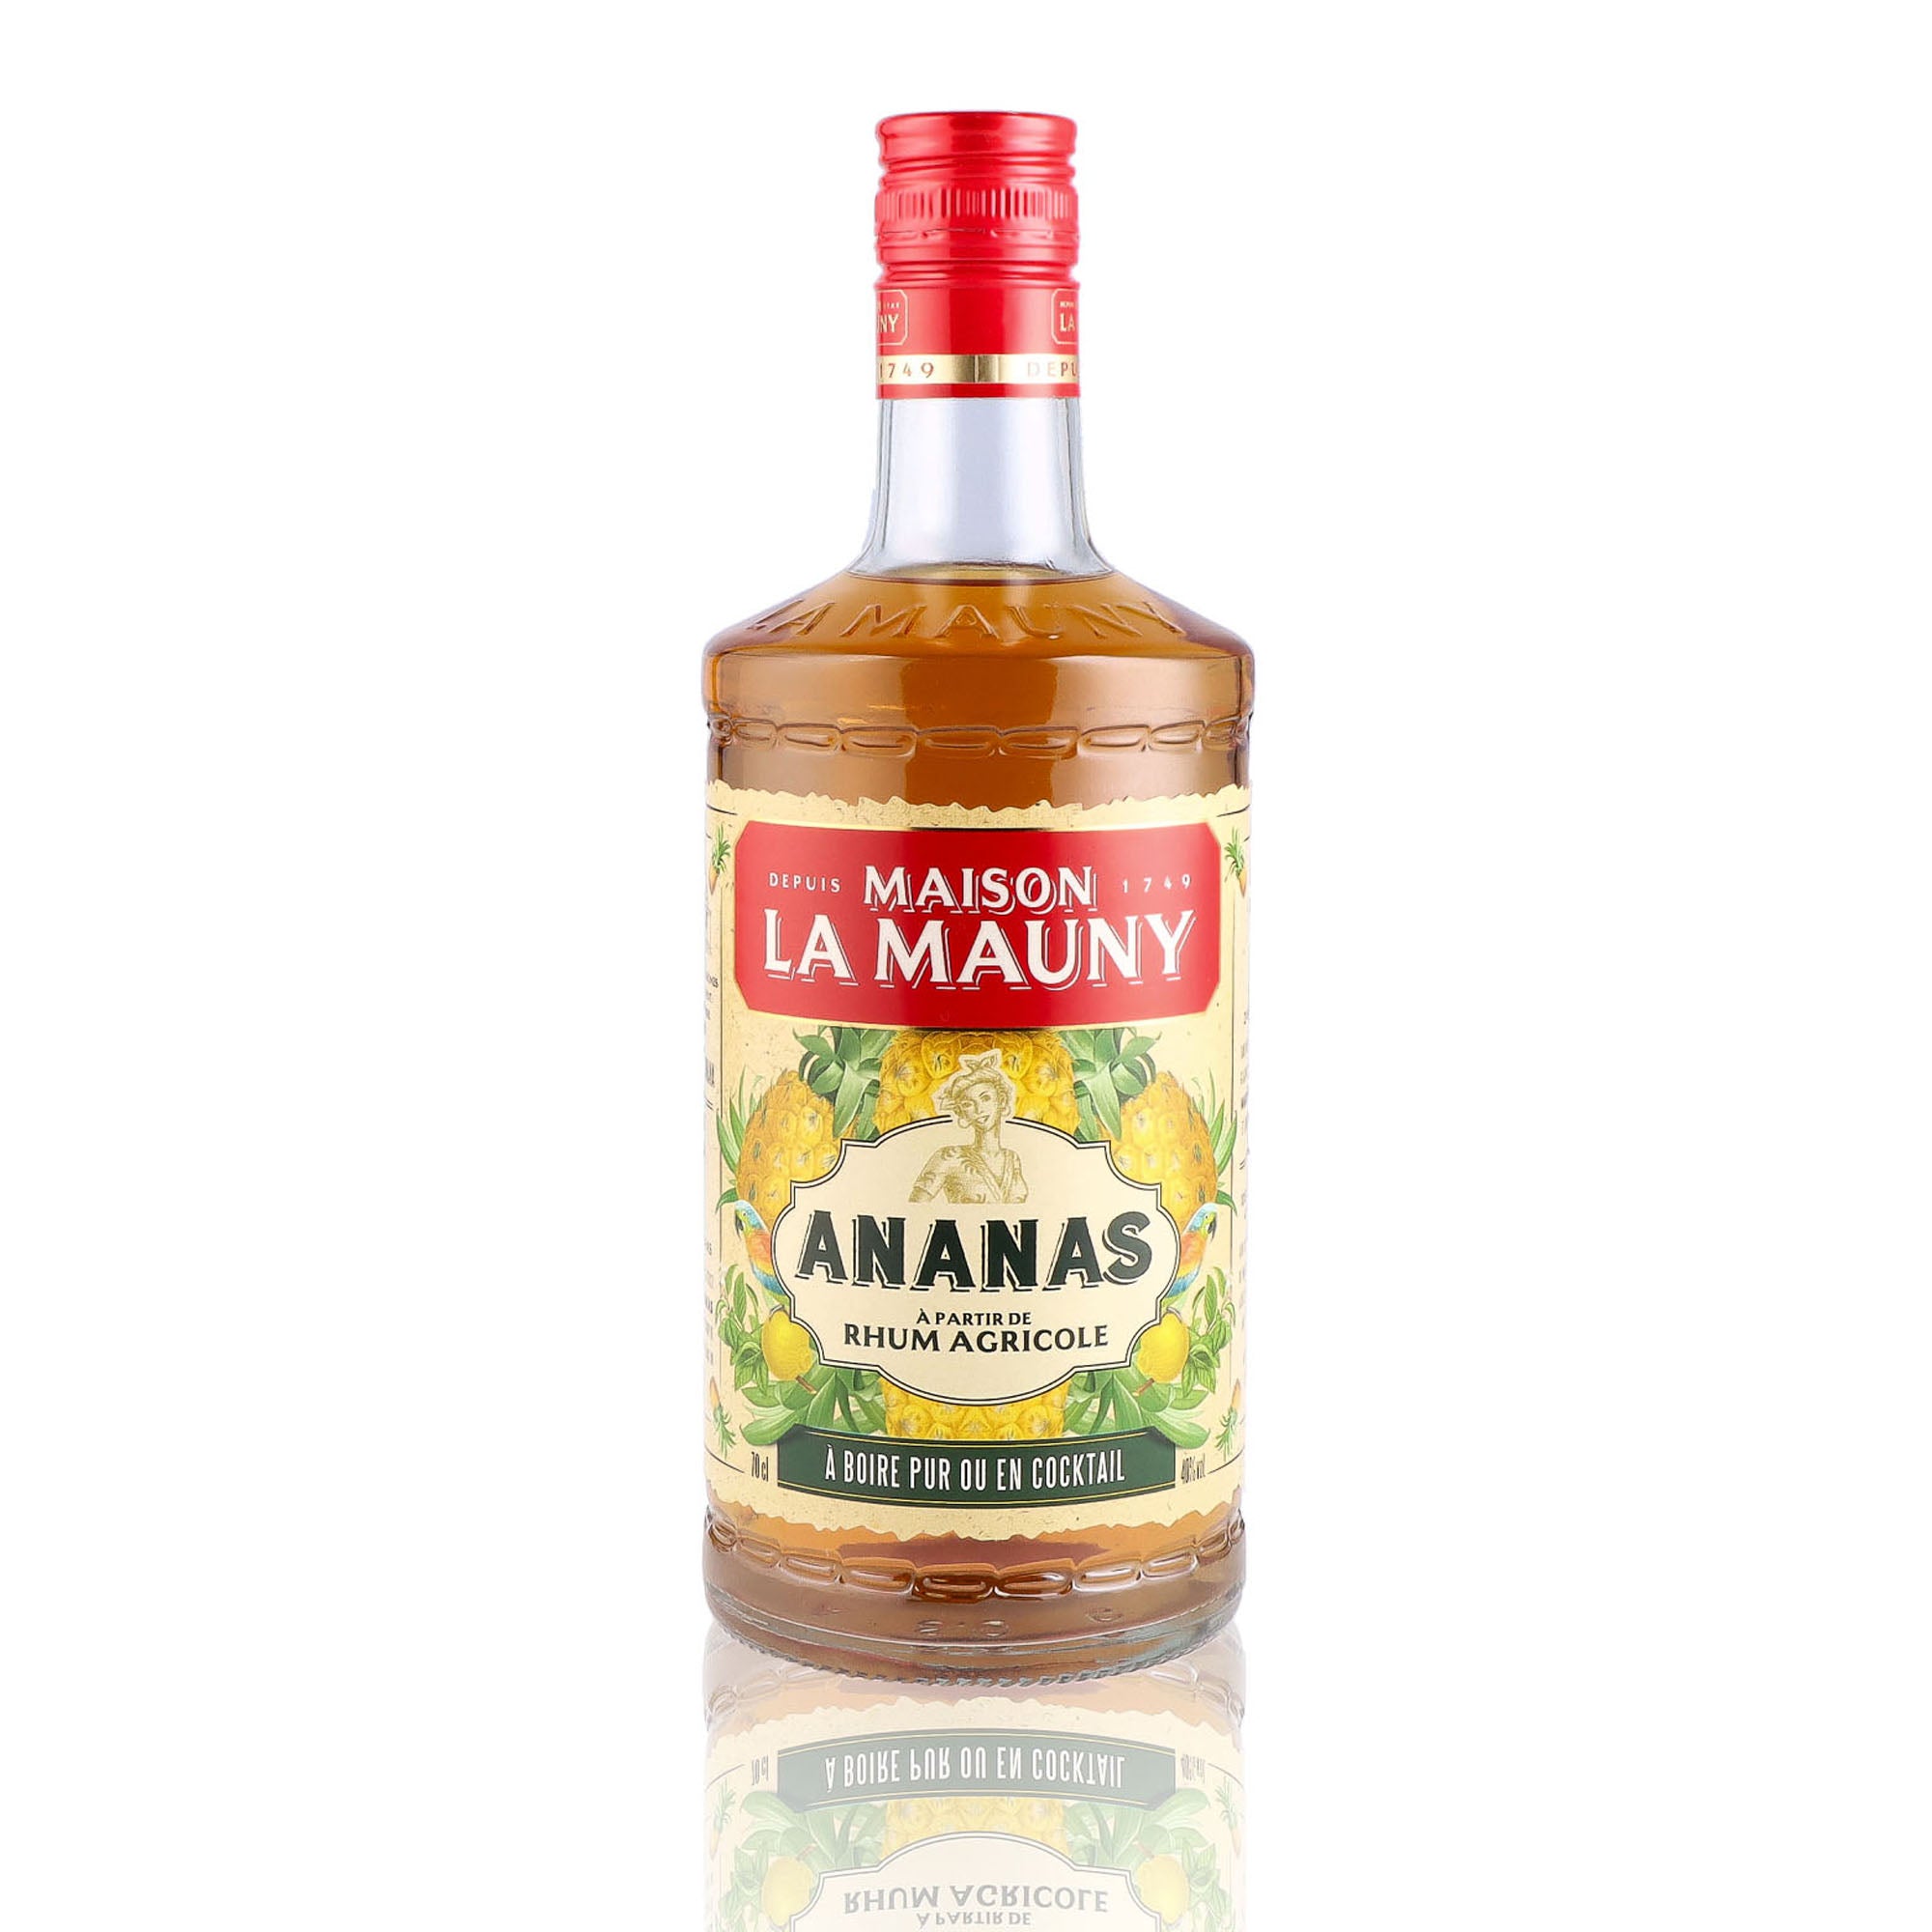 Une bouteille de liqueur de rhum, de la marque La Mauny, nommée Ananas.